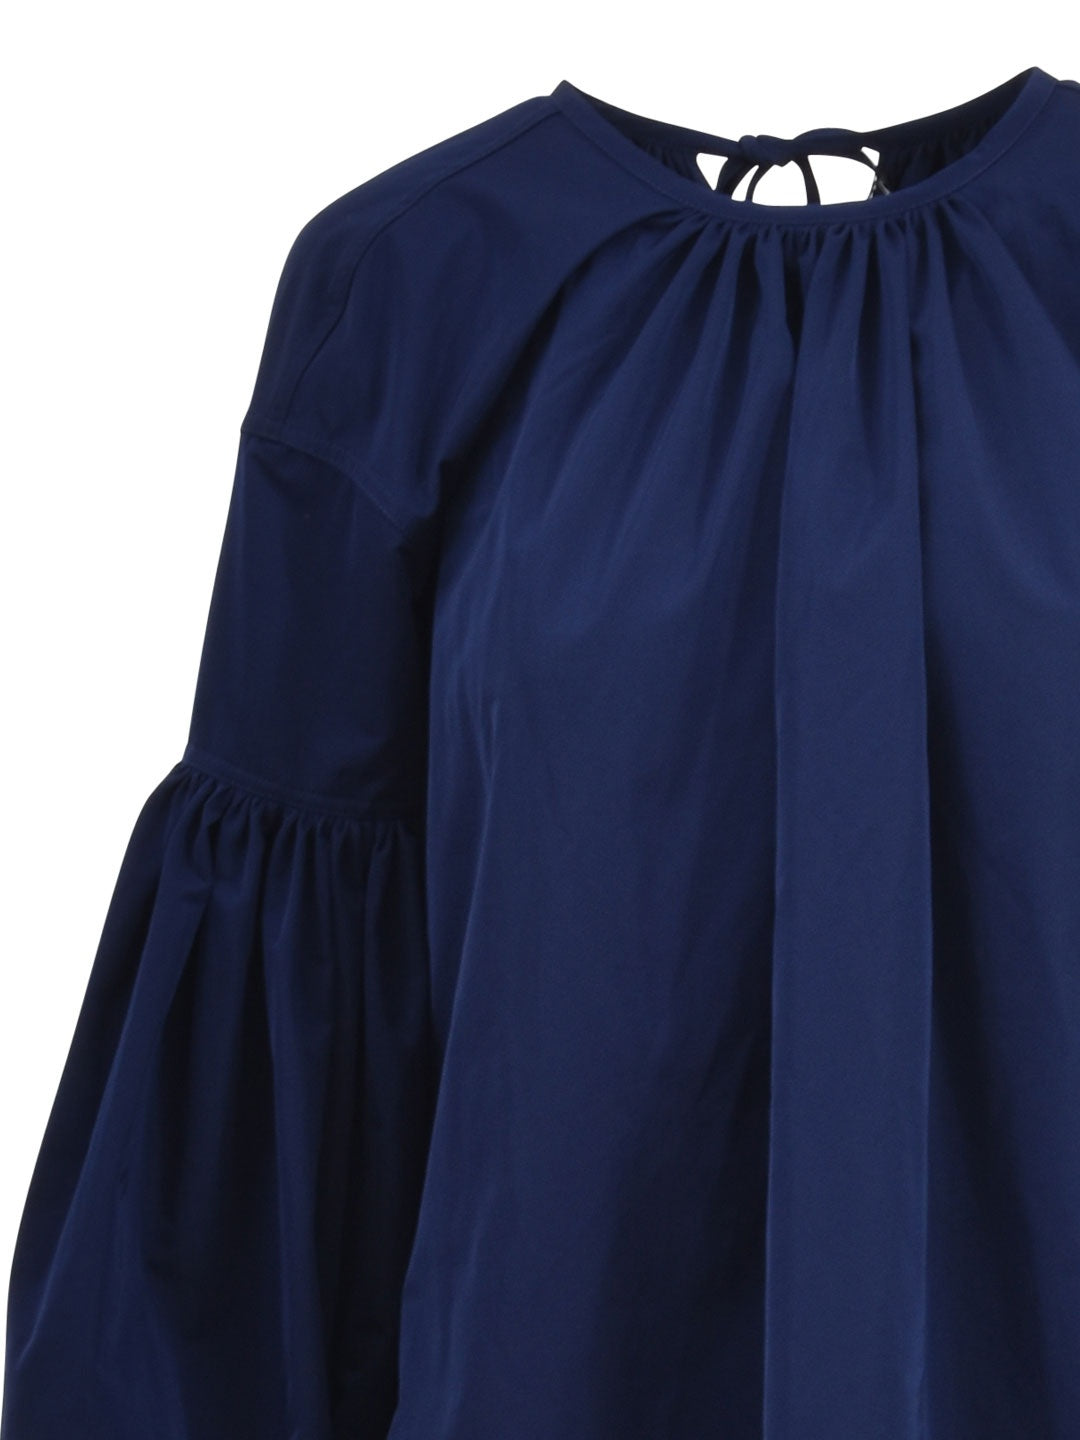 Lace Detail Bishop Dress